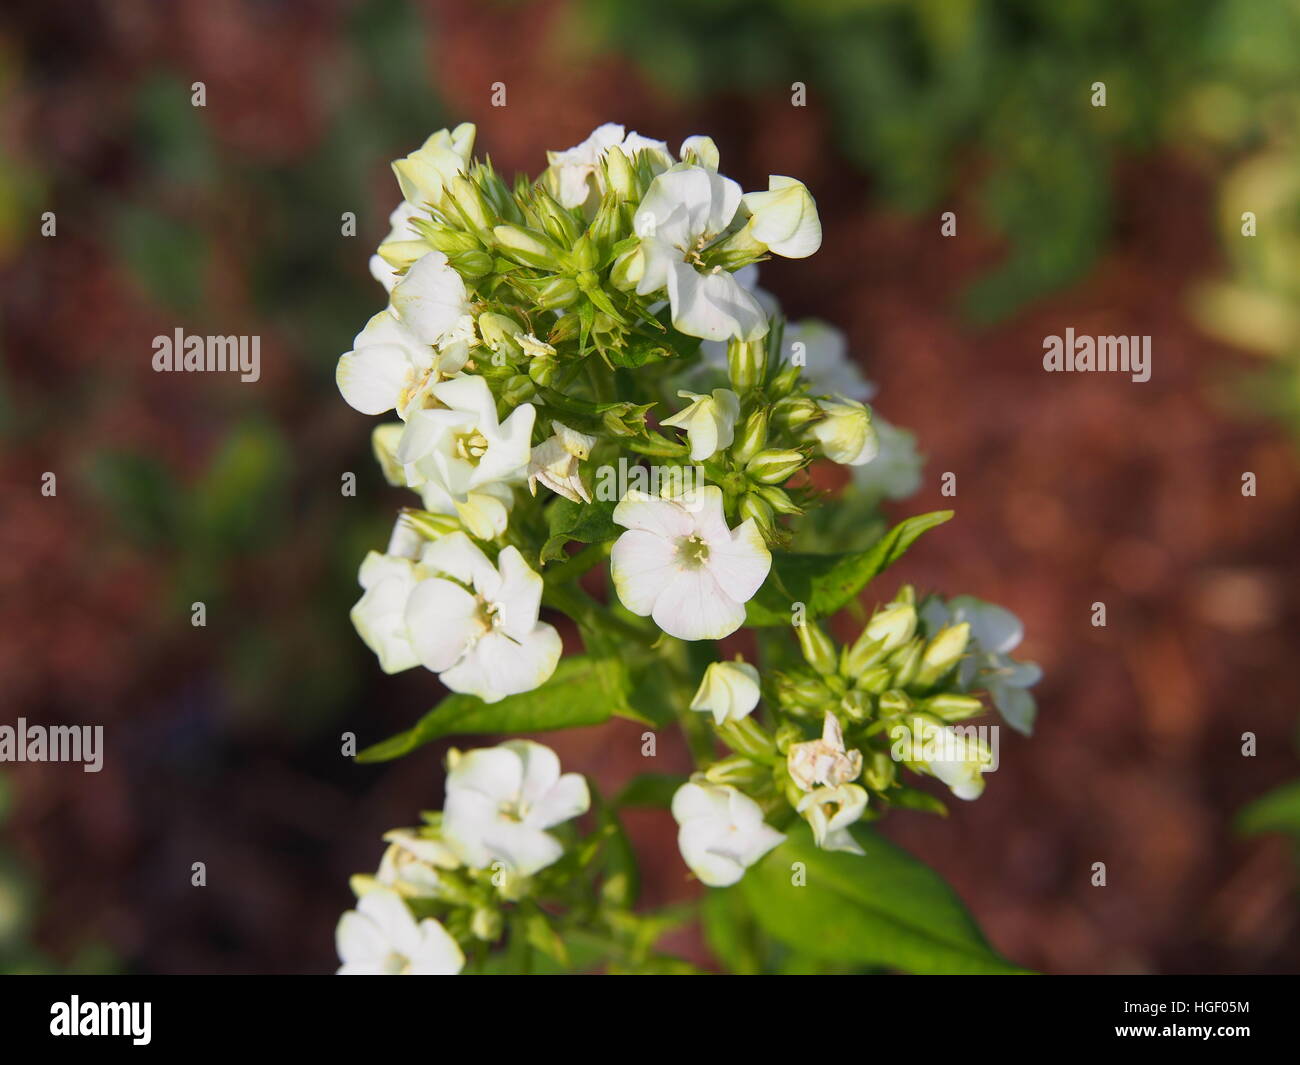 Beautiful white and green flowers of Phlox paniculata 'Jade' - garden phlox Stock Photo